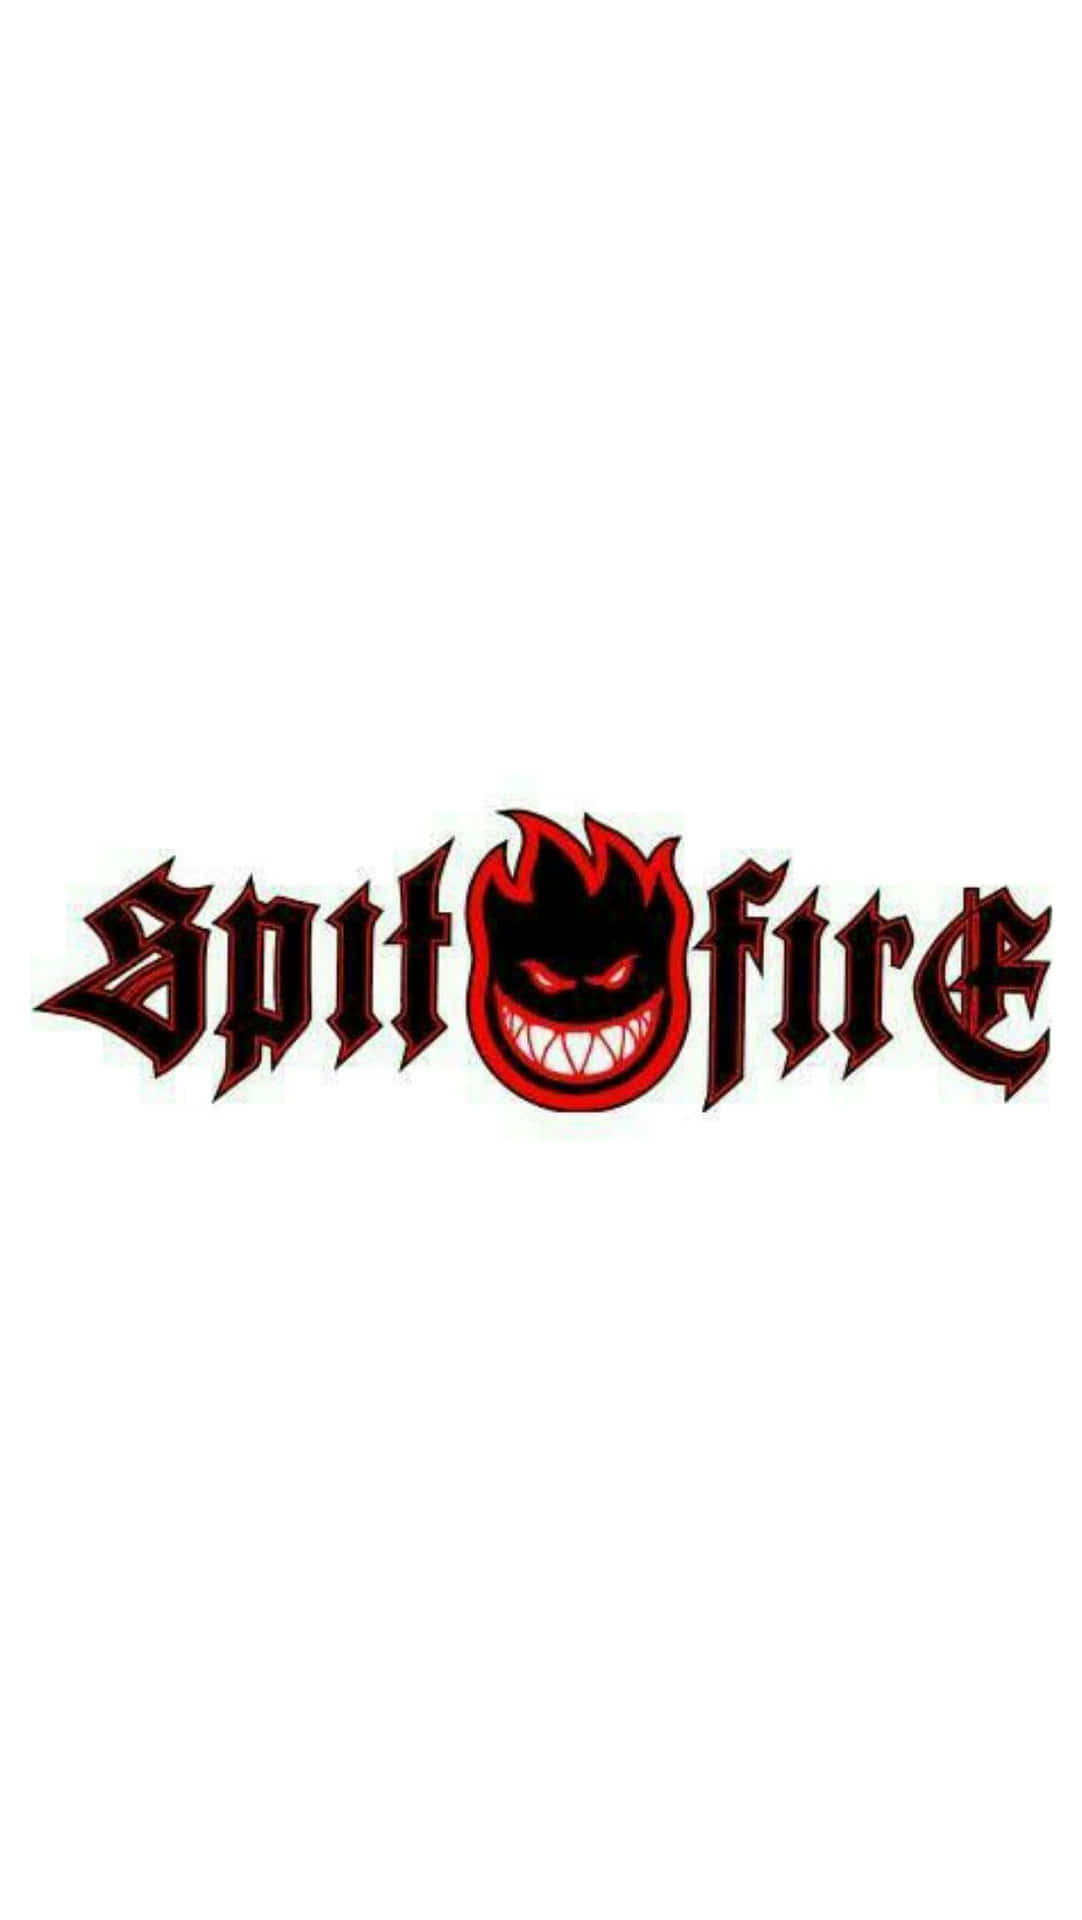 Logotipospitfire Skate Fondo de pantalla